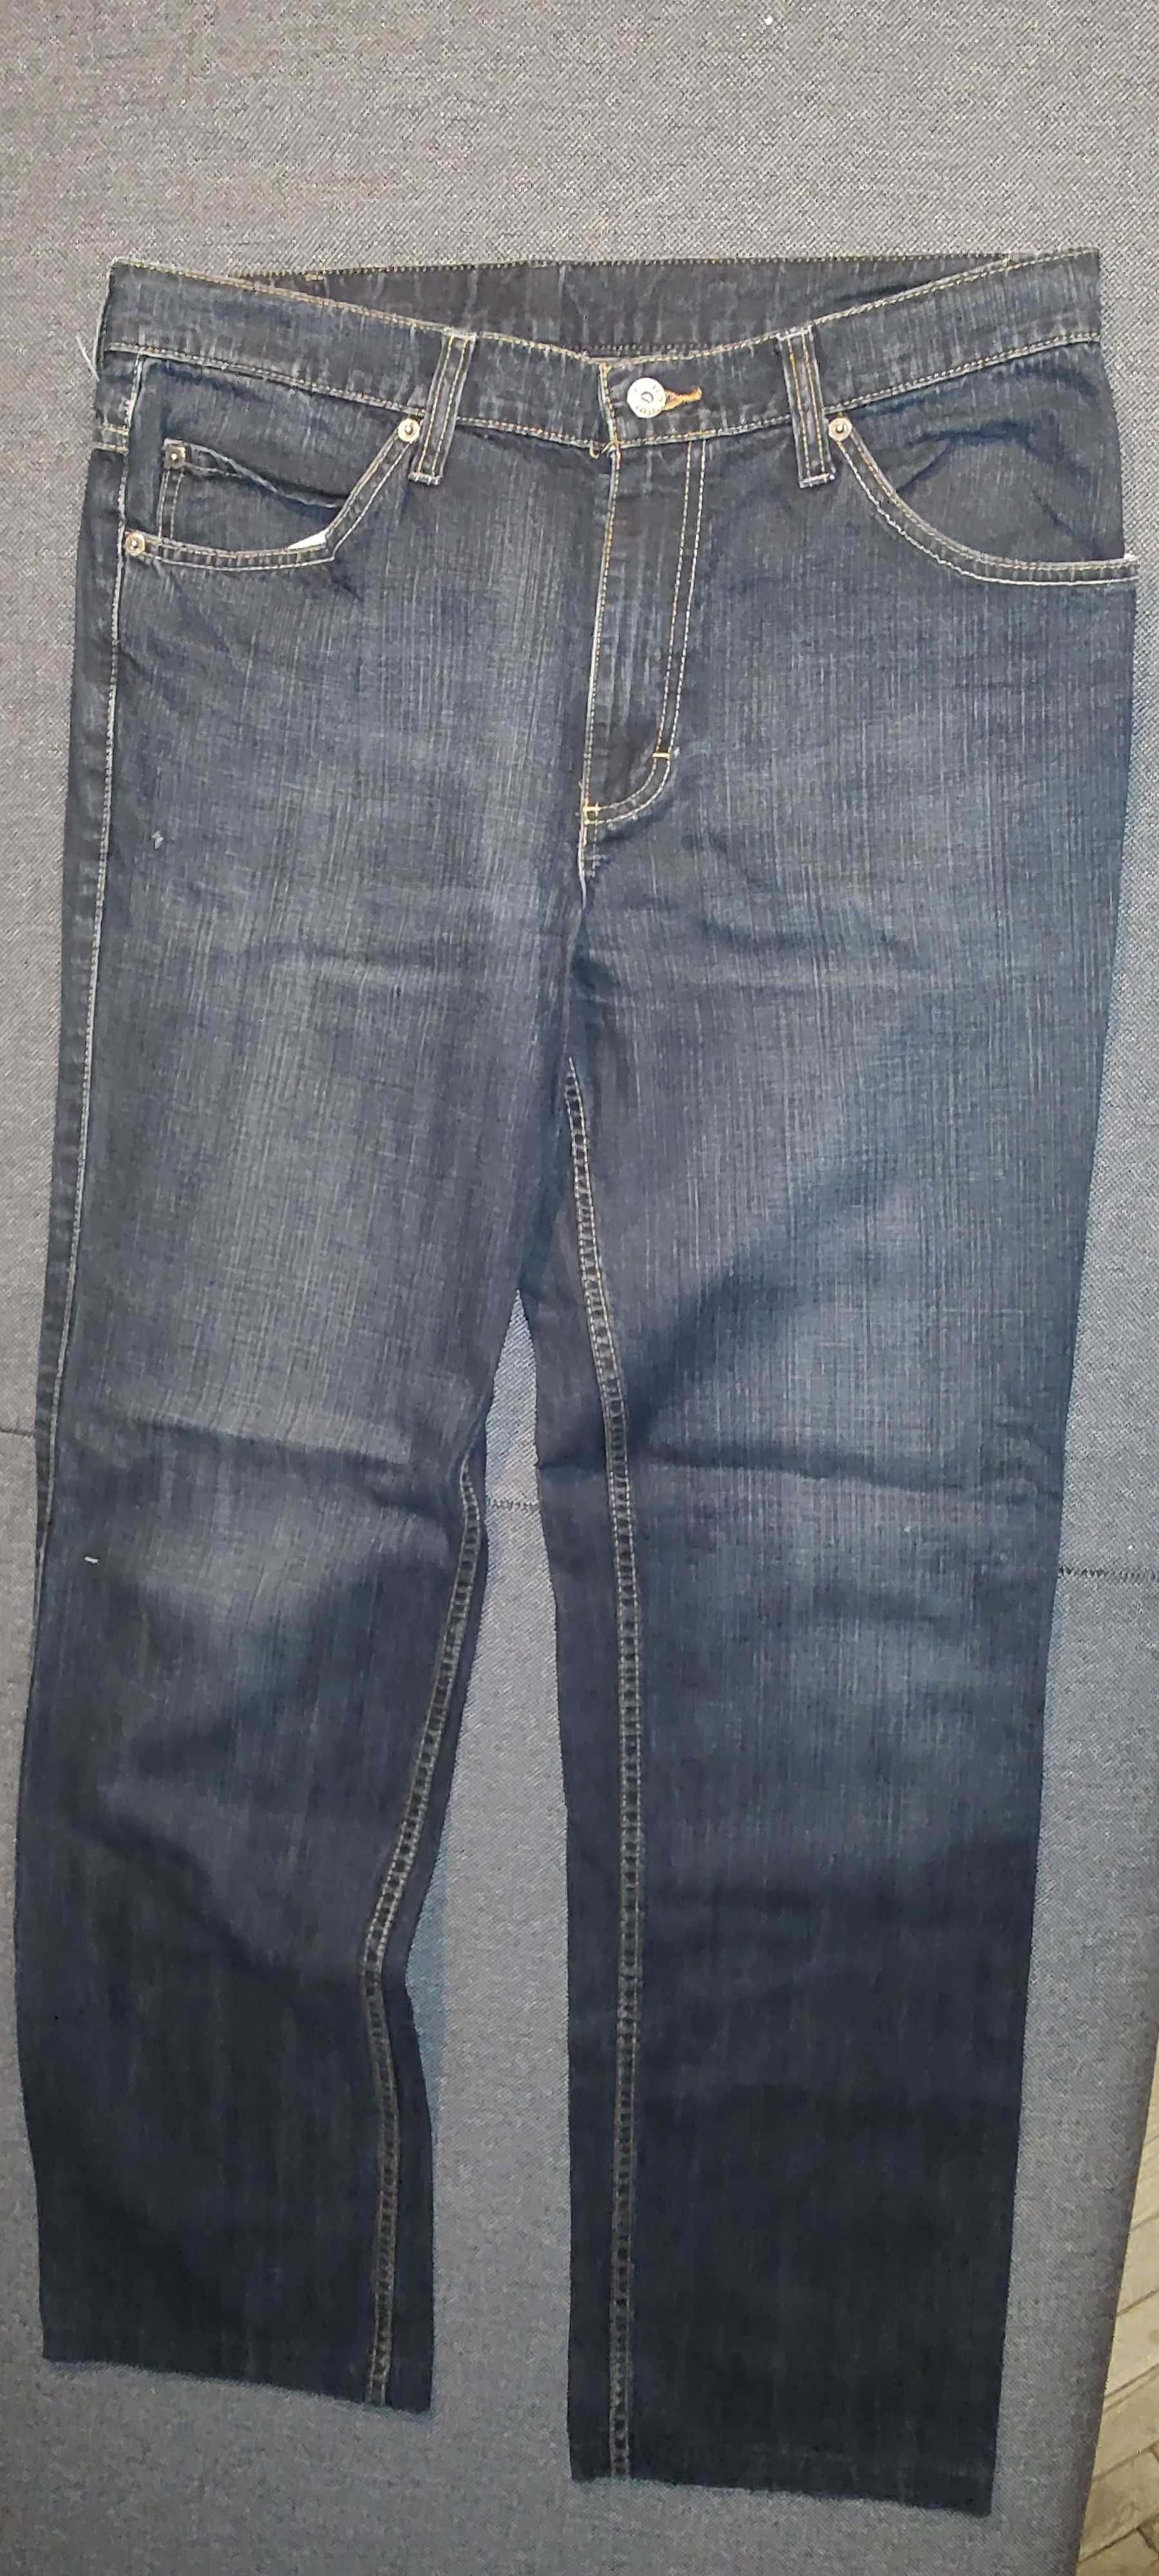 Spodnie jeans Mustang Tramper 36/34